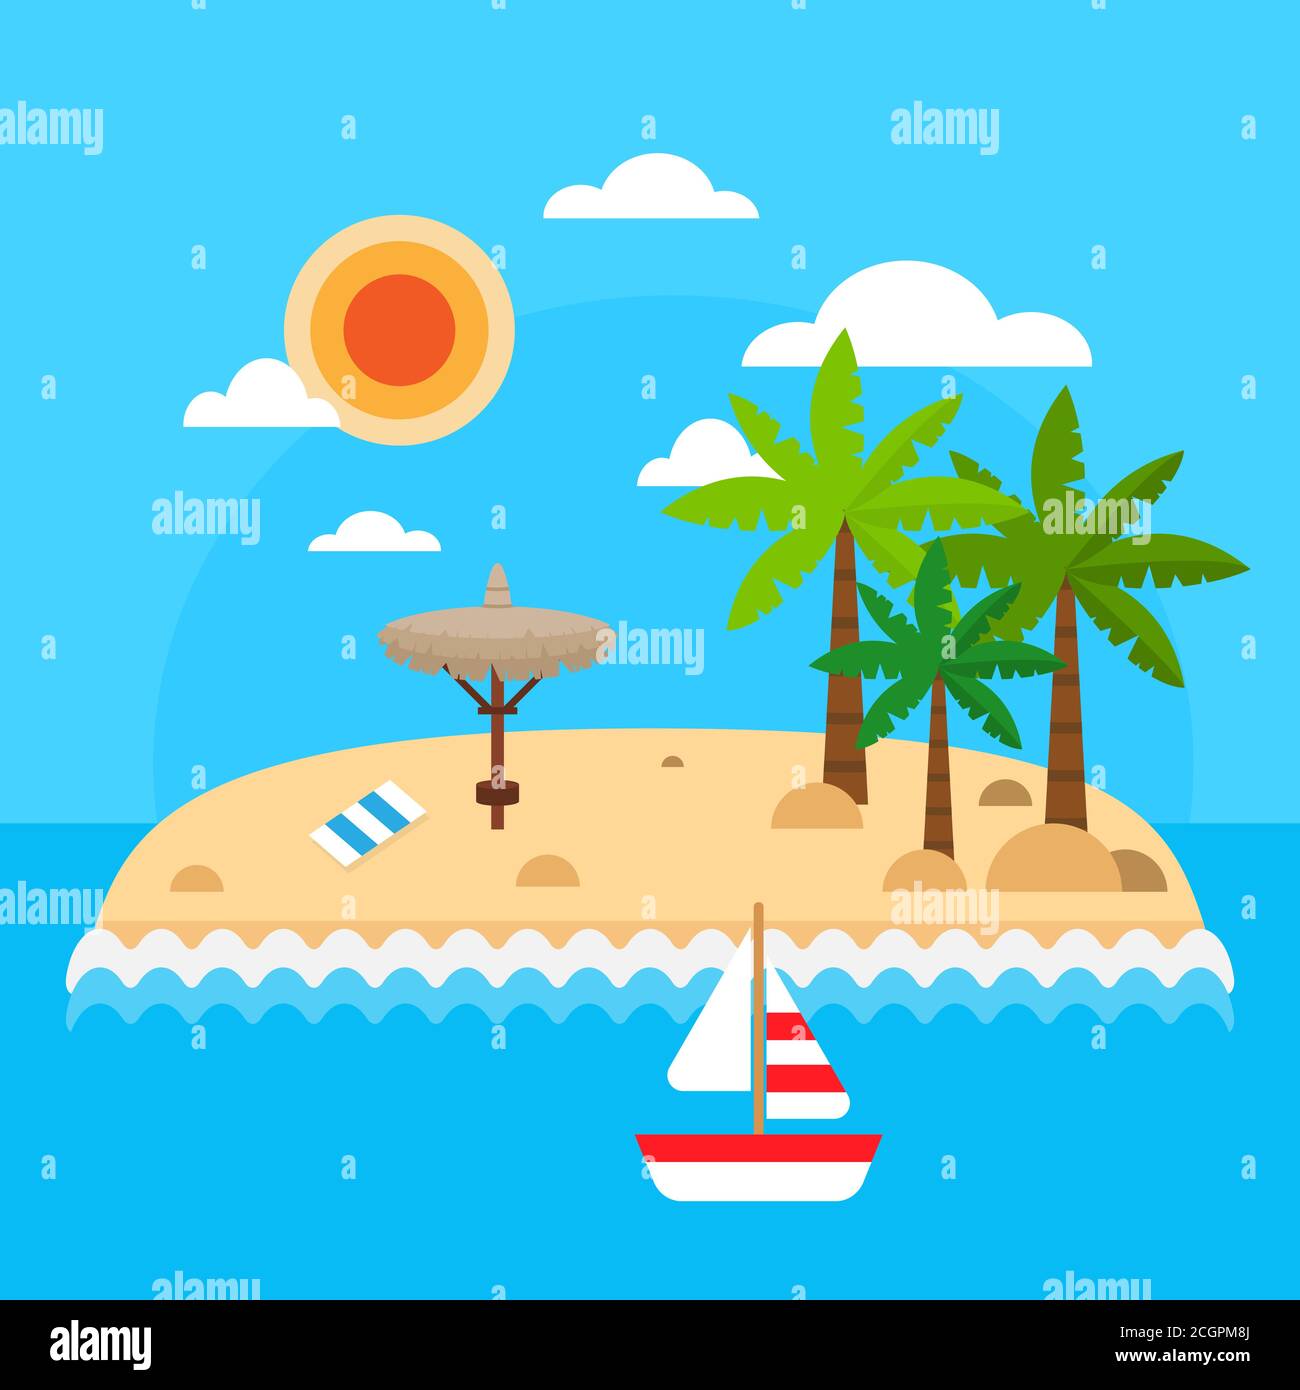 Sommerurlaub auf Meeresgrund. Tropische Insel mit Palmen, Wellen, Sonne, Strohschirmen, Handtuch, Segelschiff, Wolken. Helle Reise Sommerinsel Stock Vektor